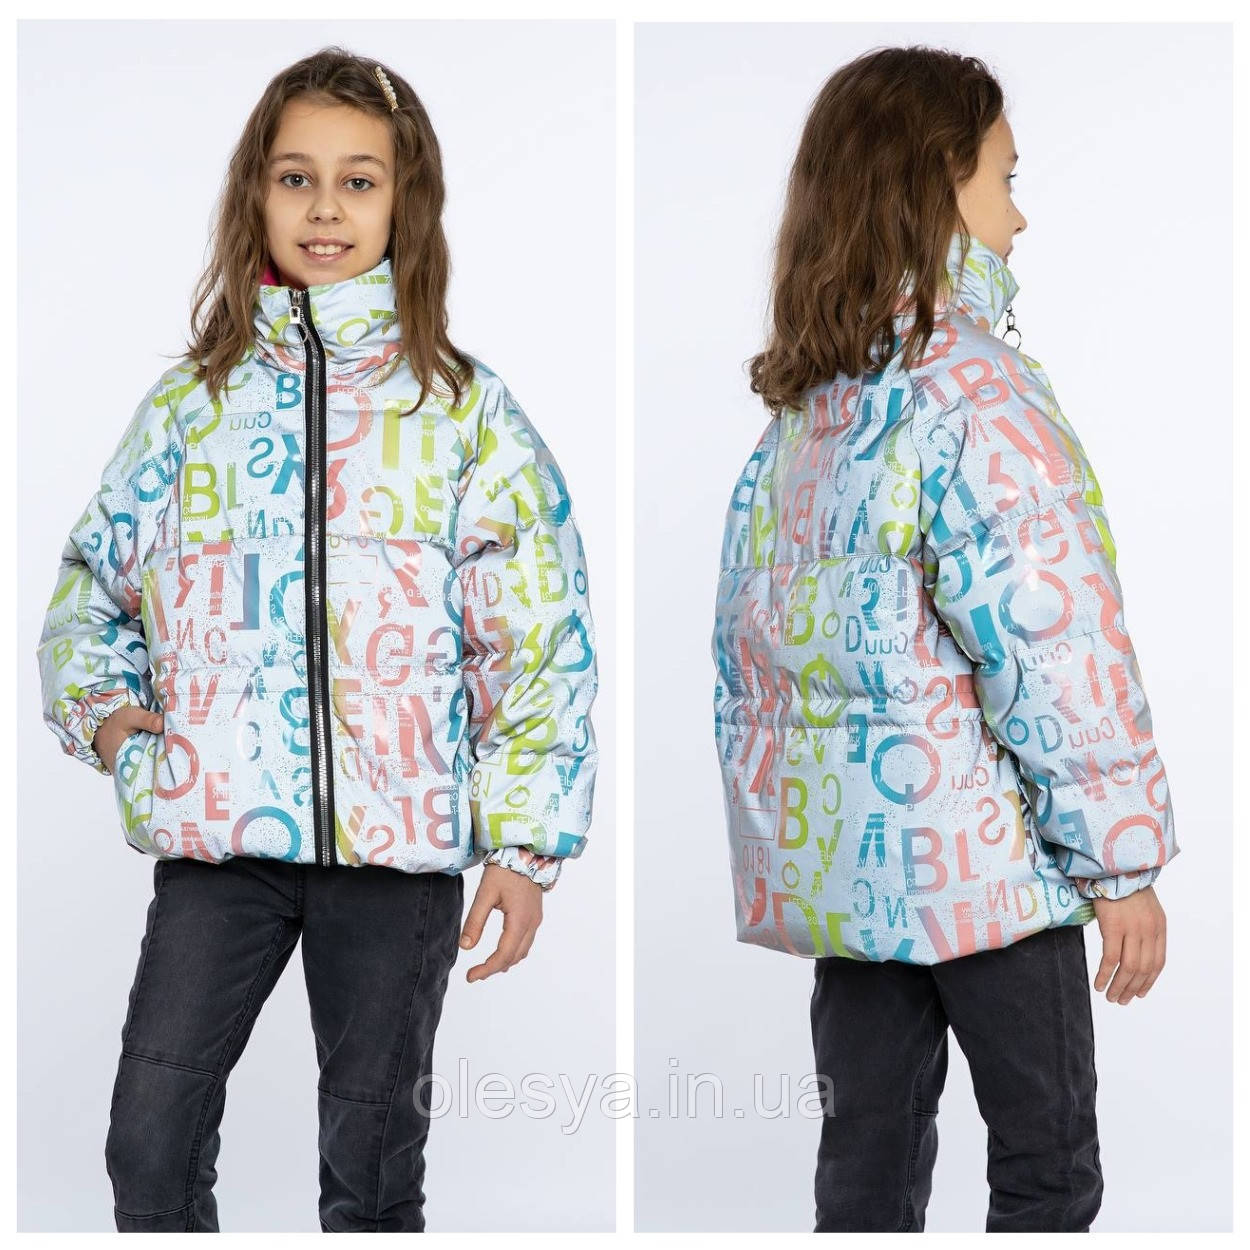 Модна світловідбиваюча куртка для дівчаток Джоан тм MyChance Розміри 134 140 158 164 ТОП продажів!